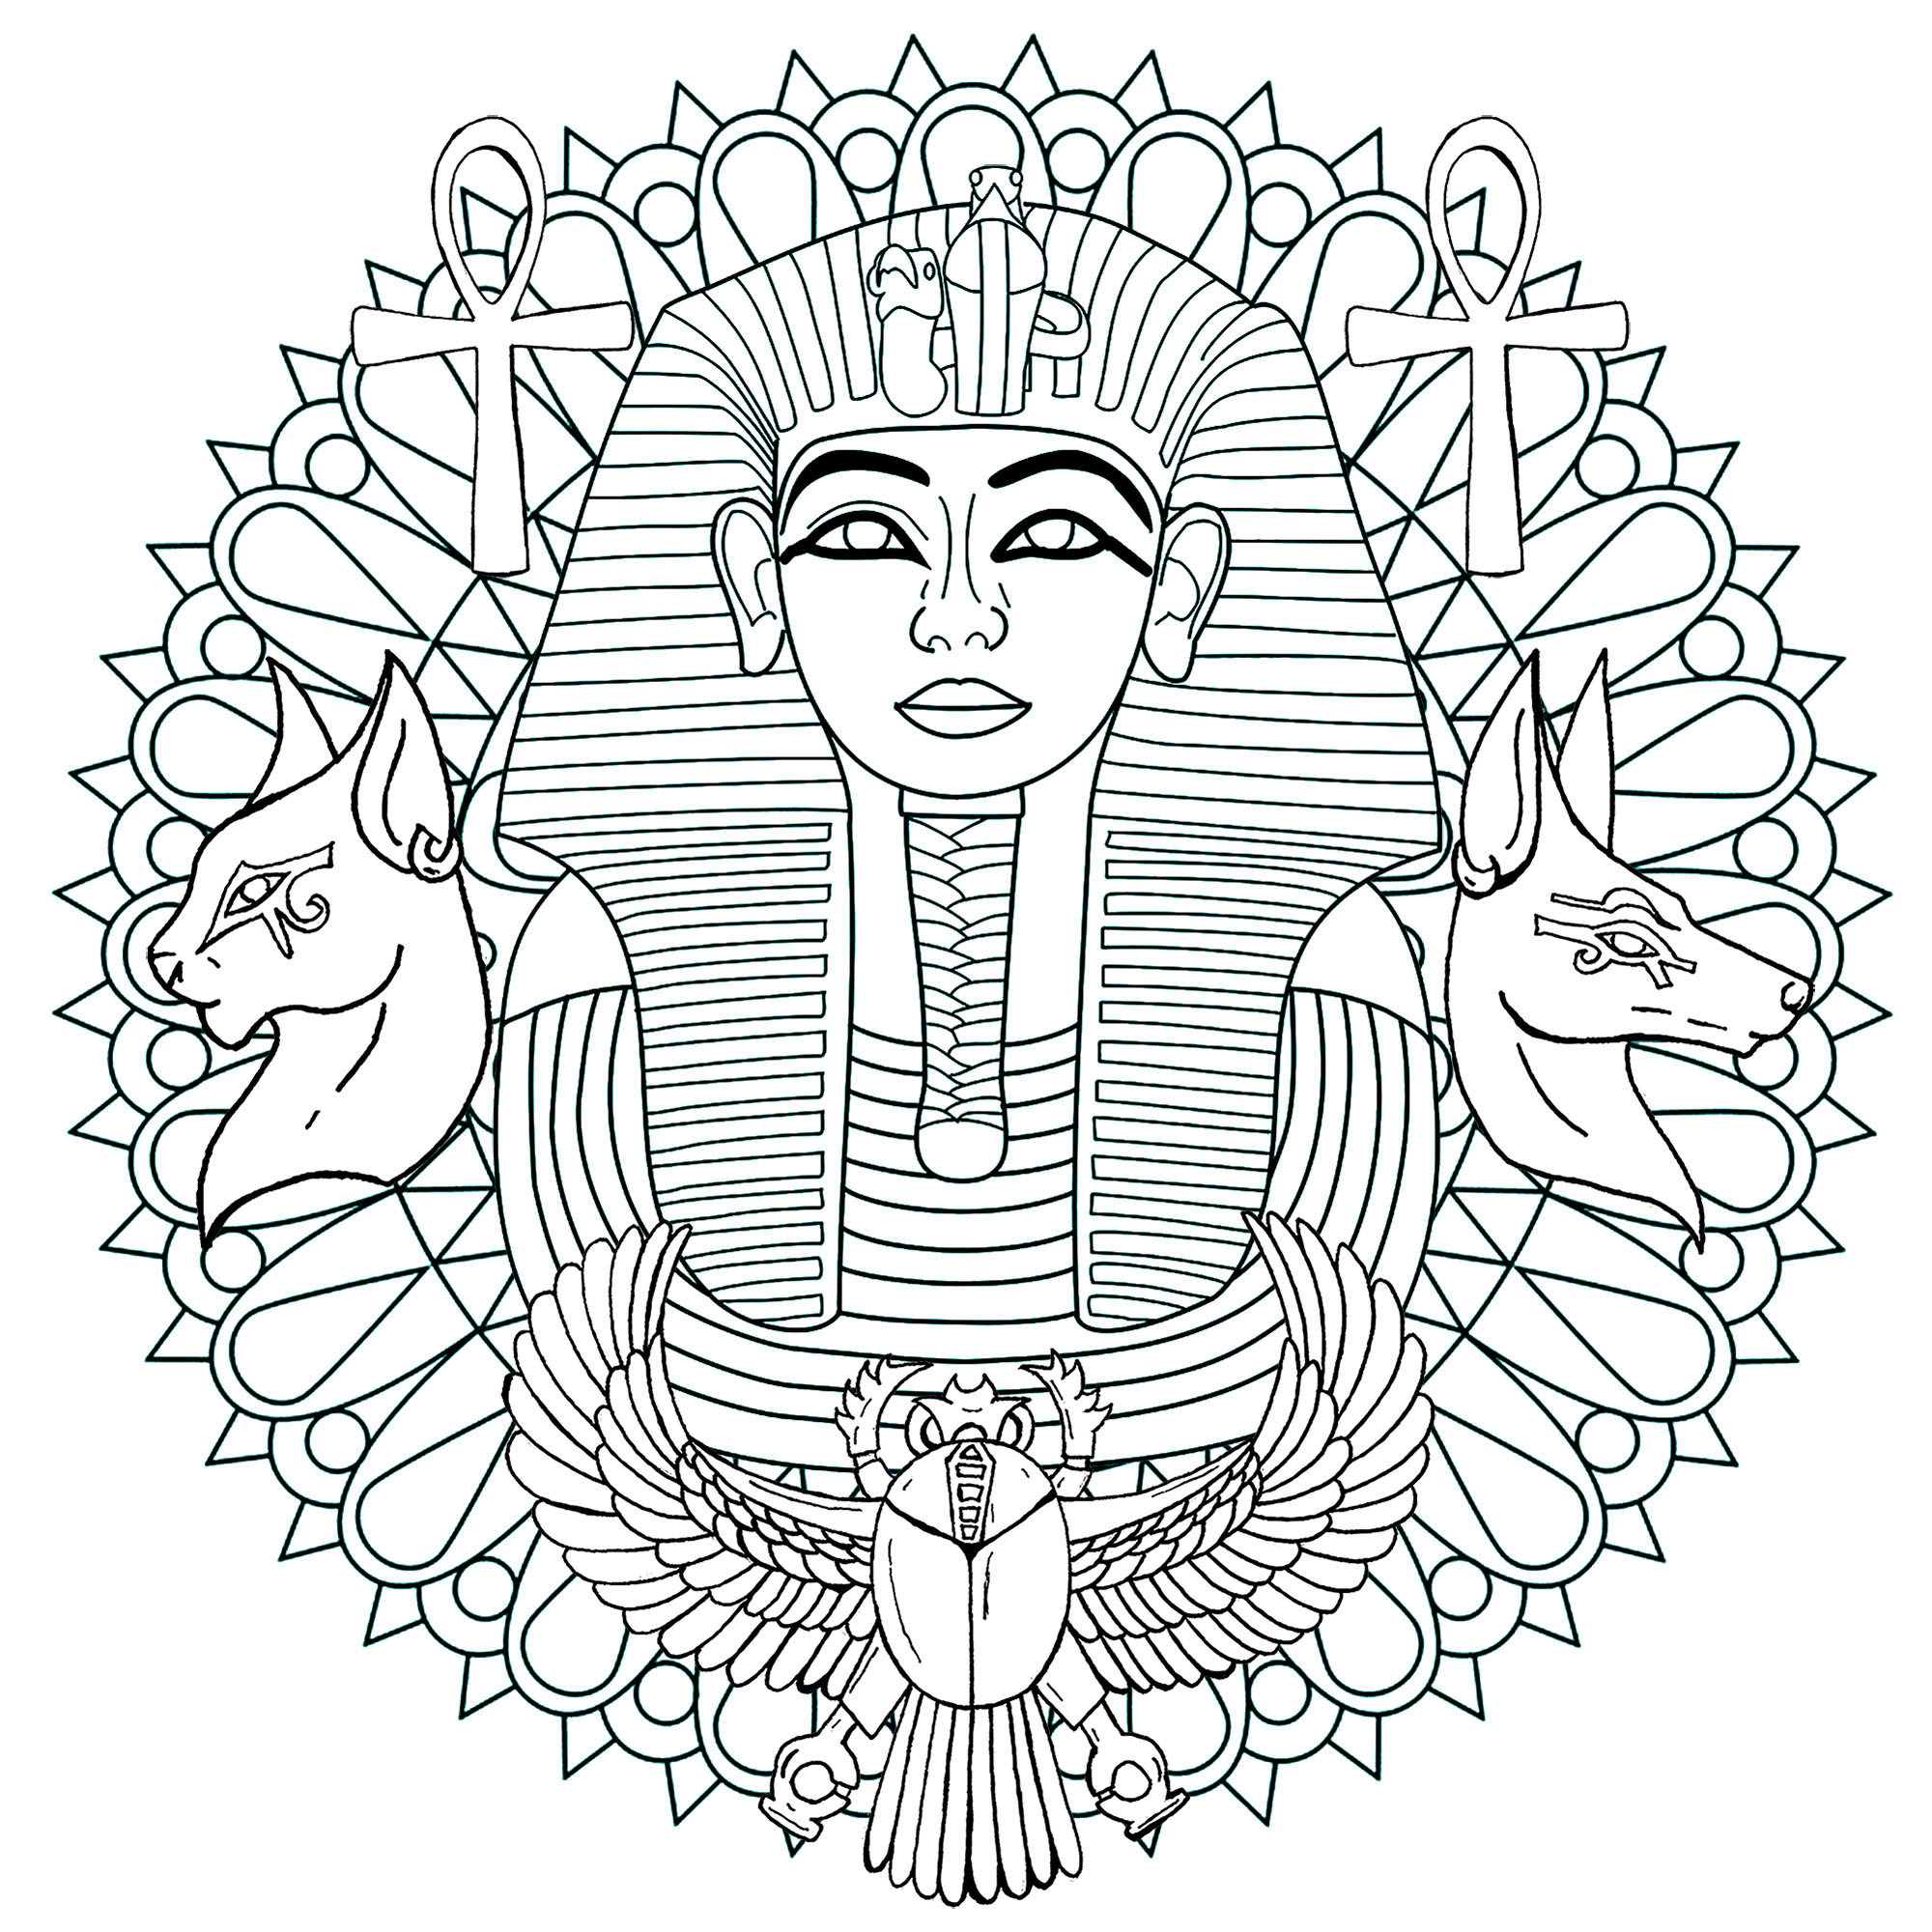 Tutanchamun ist der elfte Pharao der XVIIIᵉ Dynastie. Dies ist ein Mandala mit seiner berühmten Totenmaske in der Mitte. Version 1